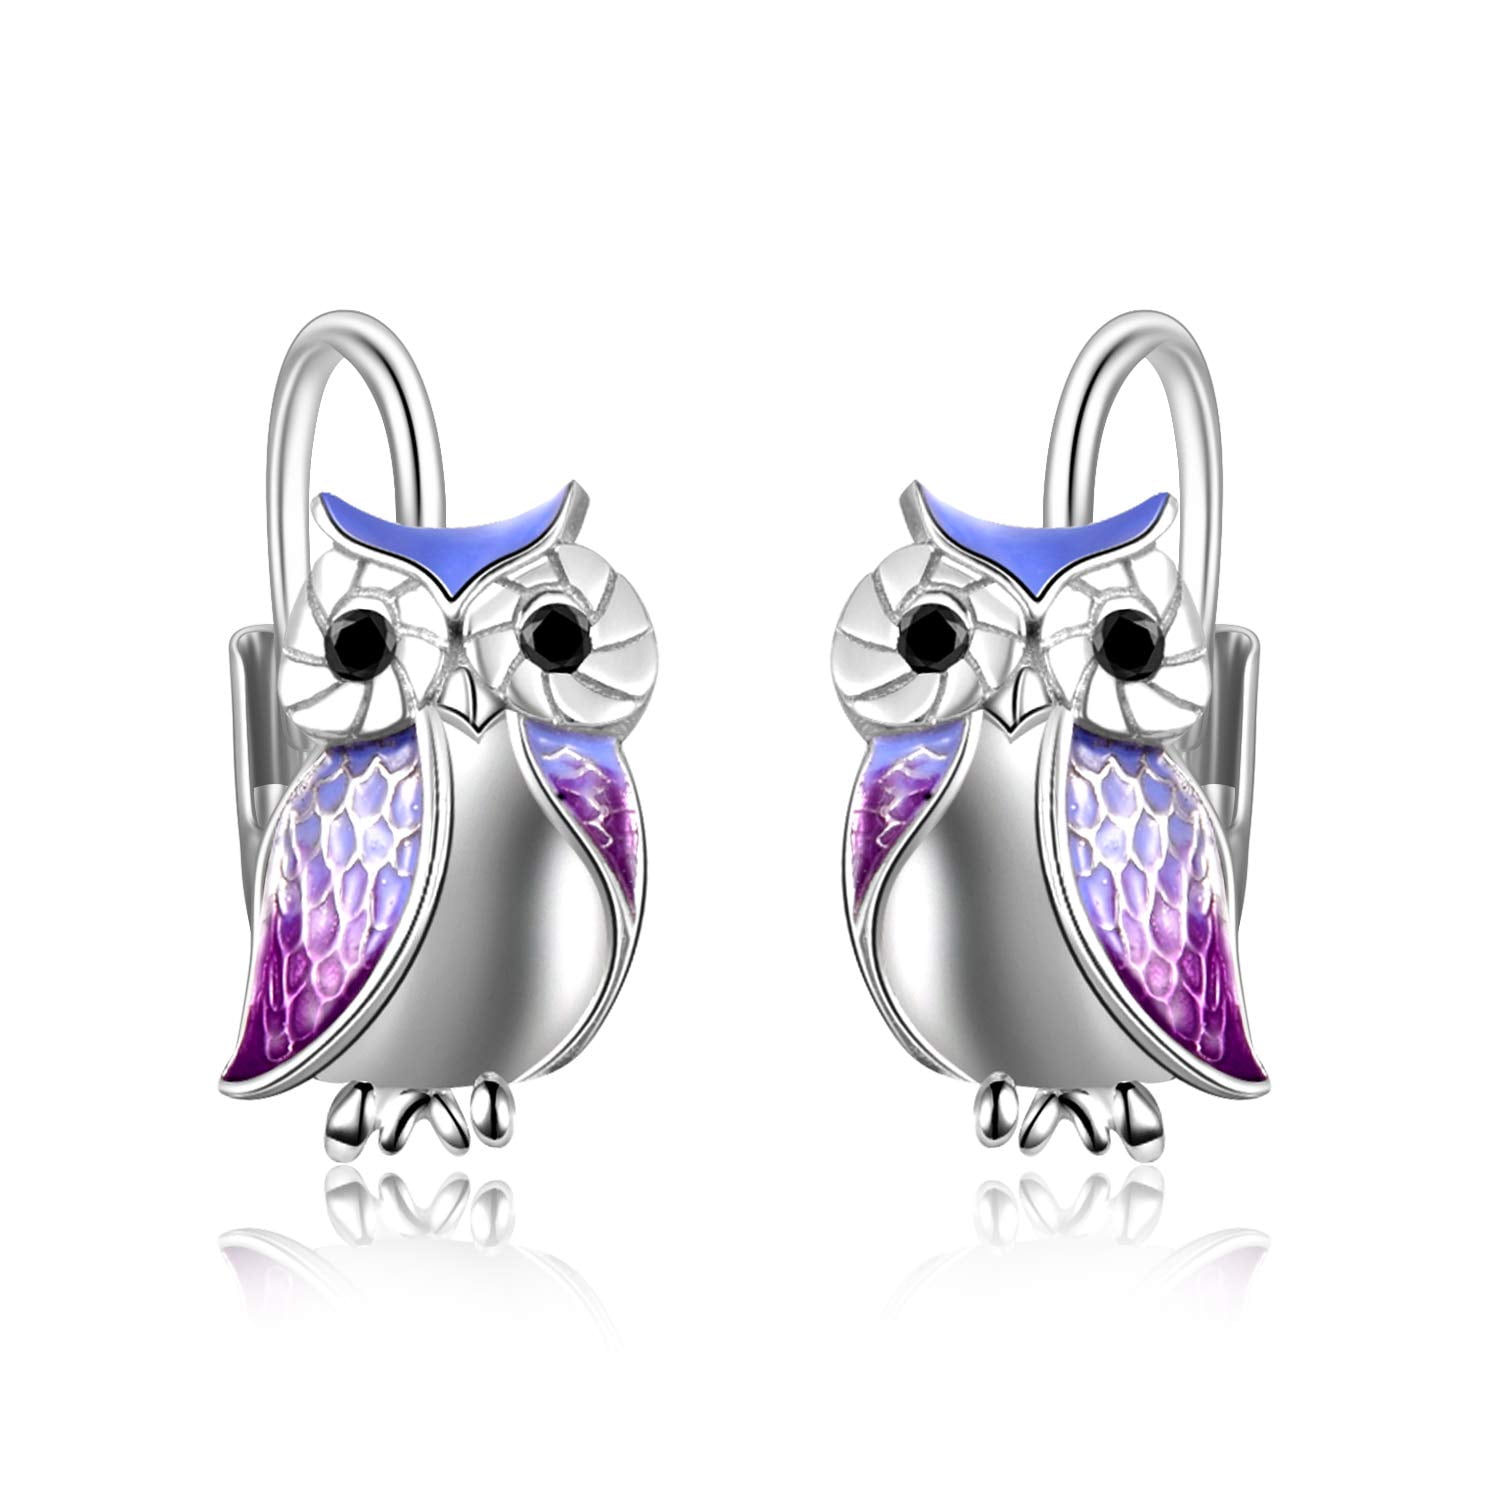 Devata Night Owl Classic Sterling Silver 925 Earrings Stud Purple DCN5223AM 